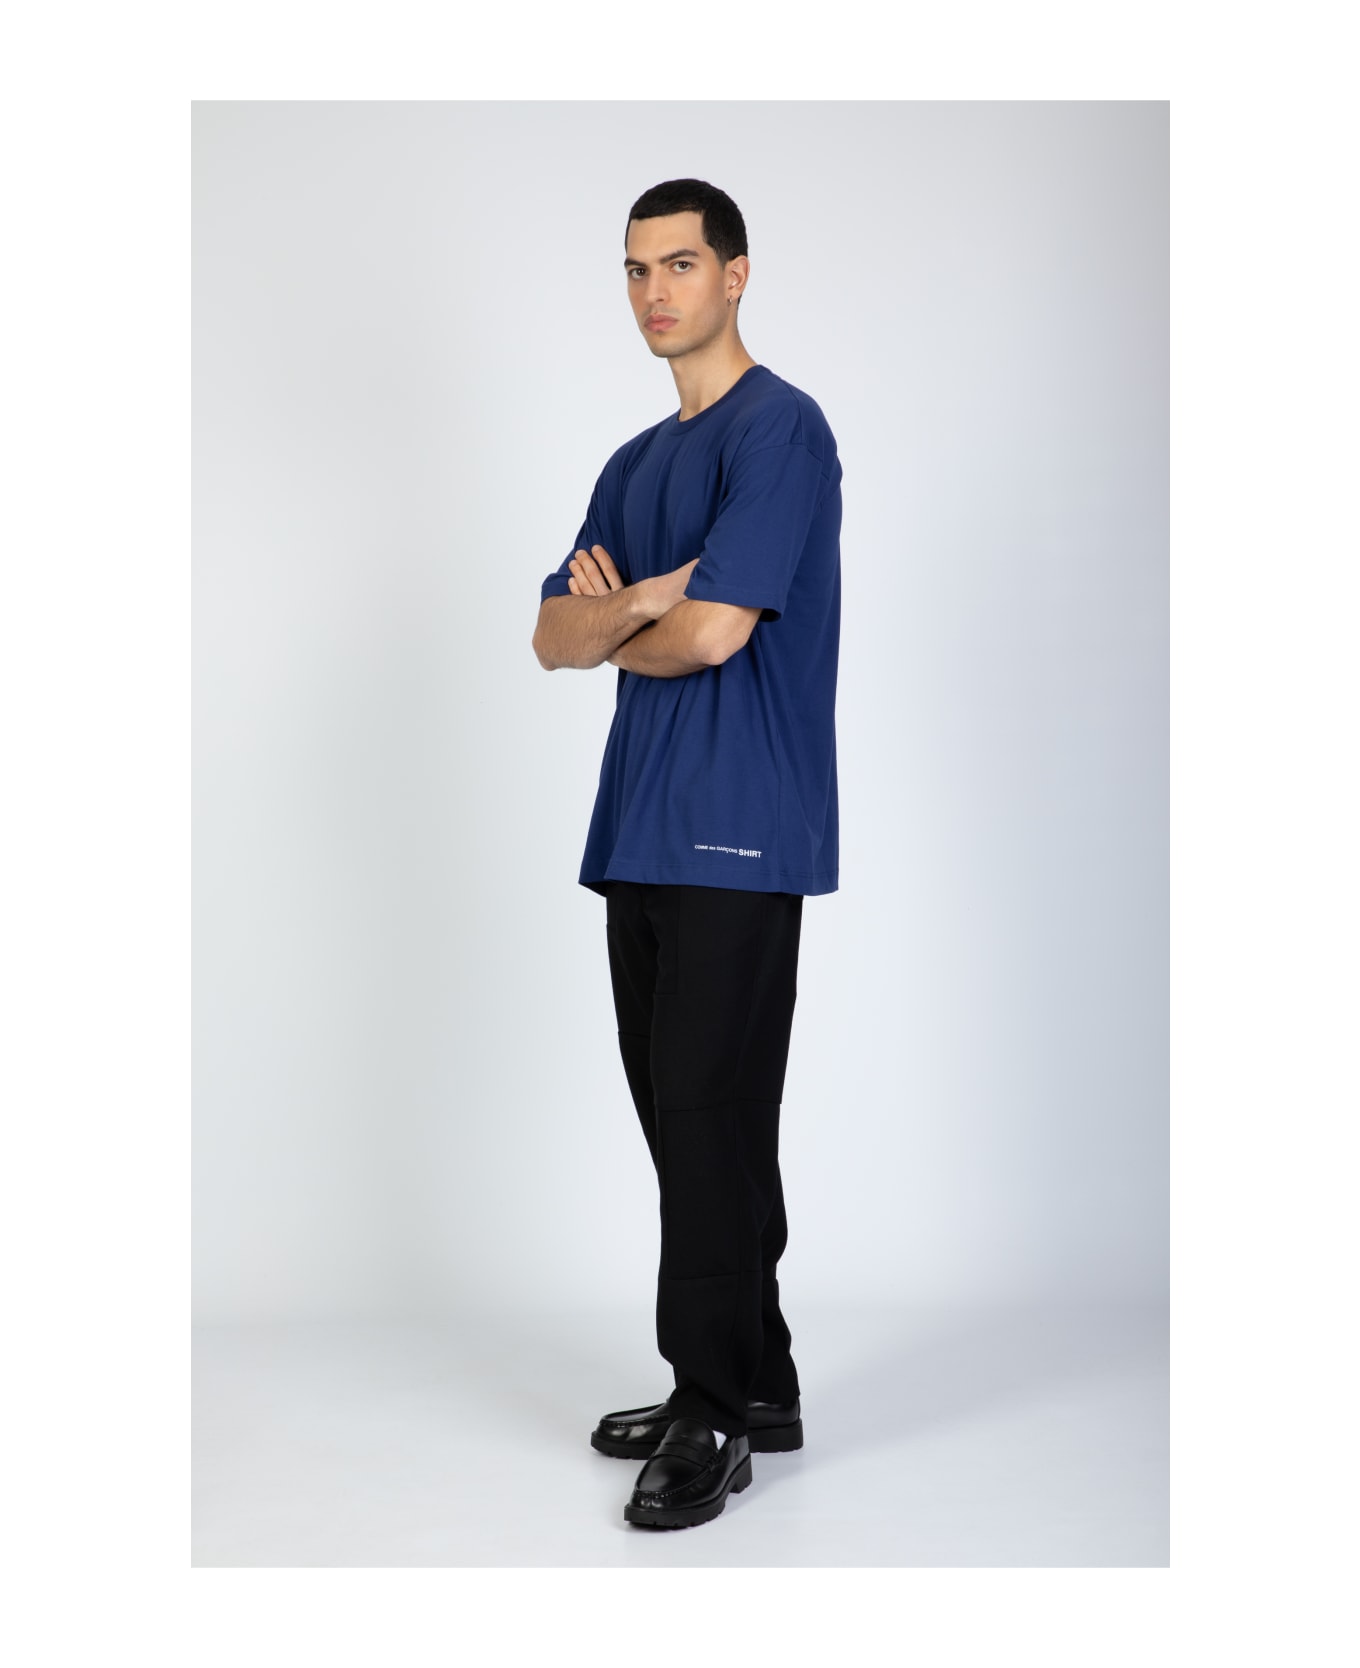 Comme des Garçons Shirt Mens T-shirt Knit Navy blue cotton oversize t-shirt with logo - Blu シャツ